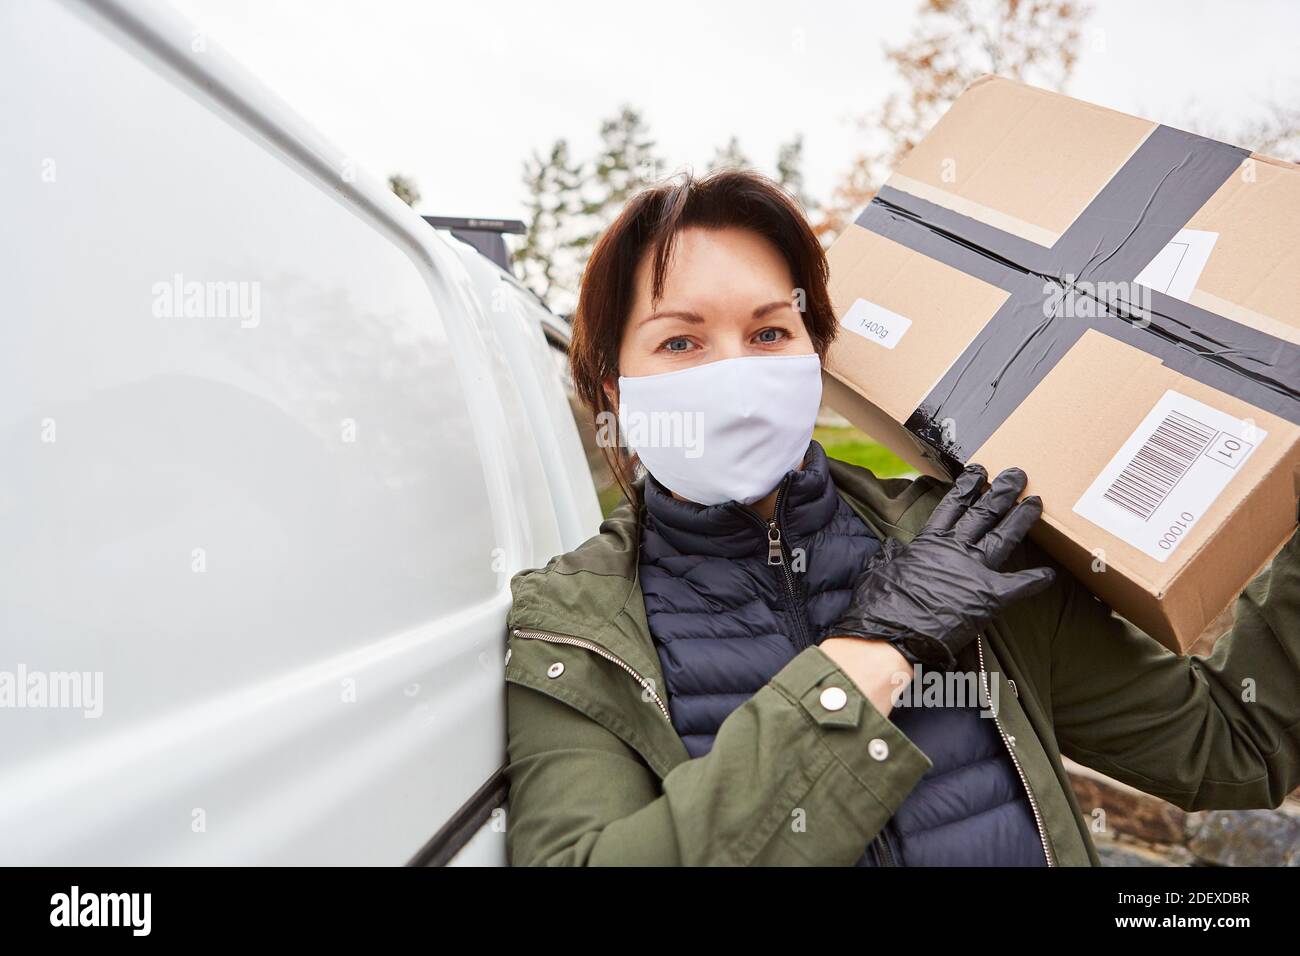 El transportista de entrega de paquetes con máscara frontal lleva el paquete de la furgoneta para la entrega Foto de stock